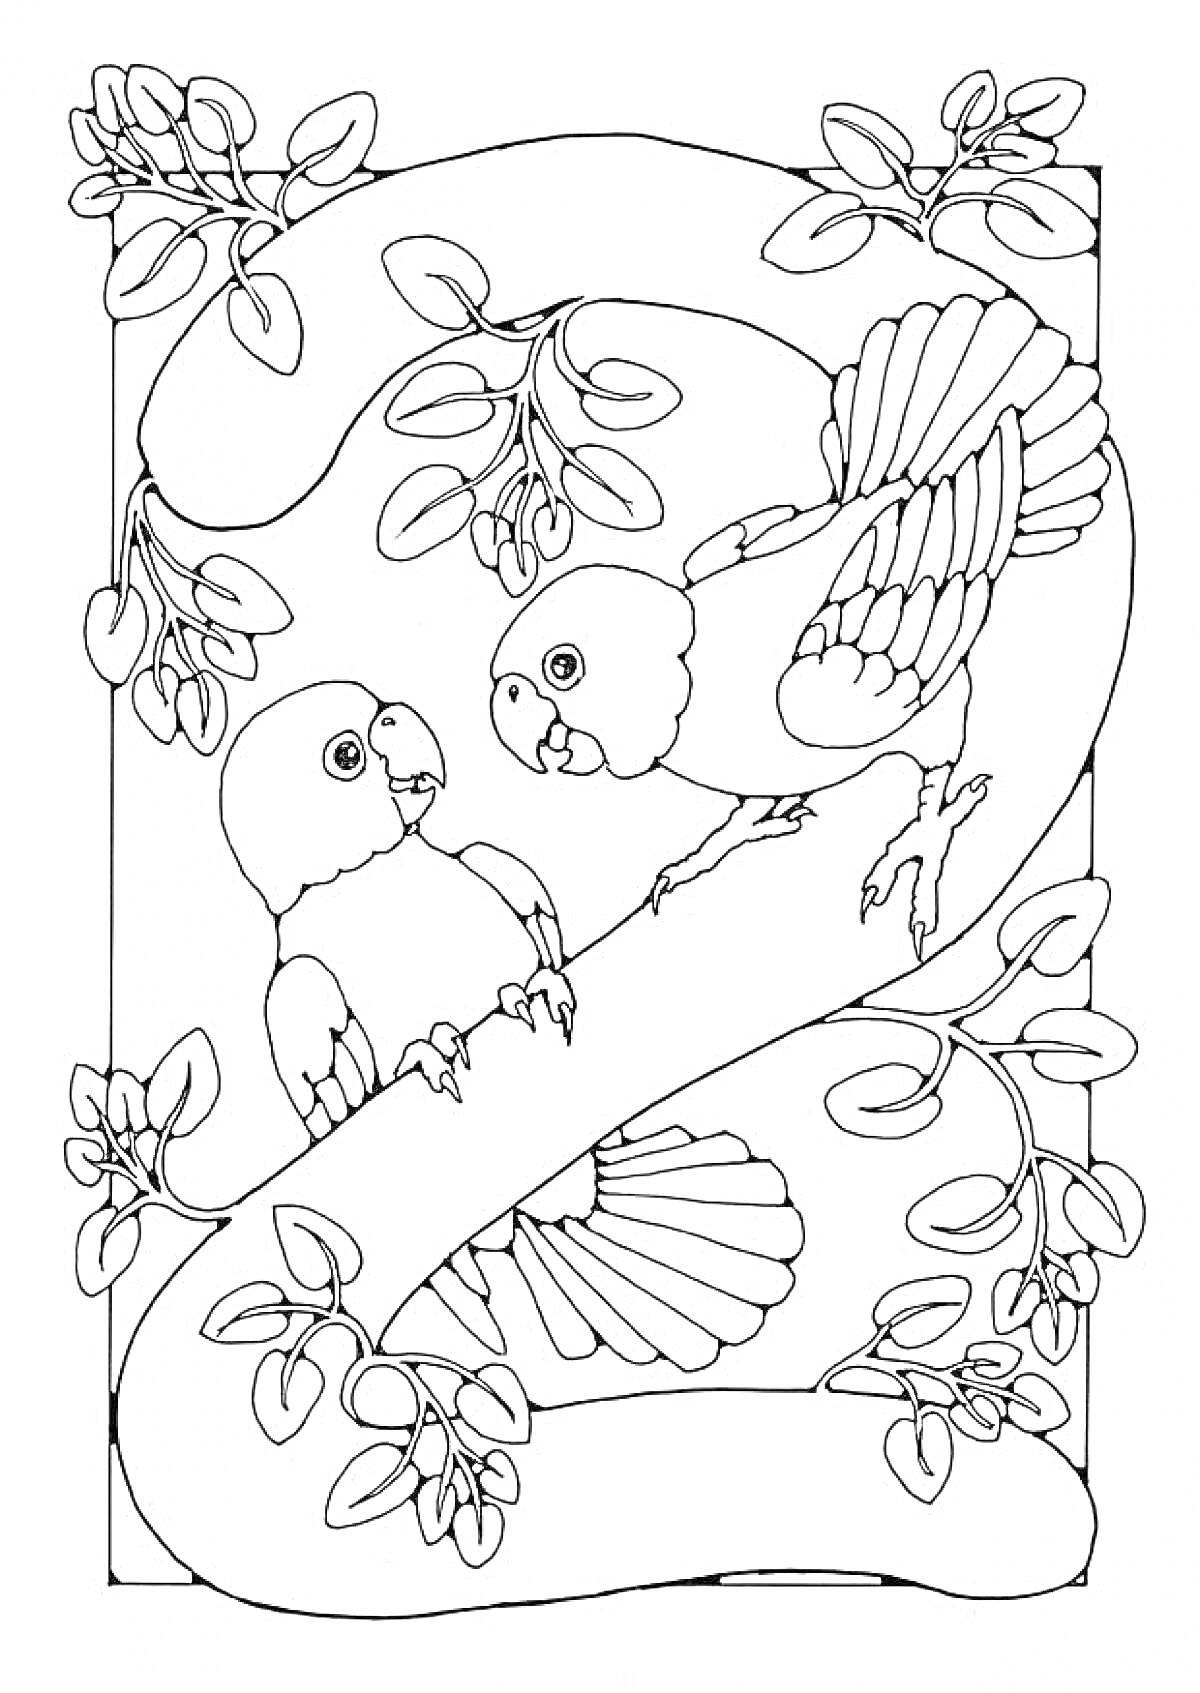 Раскраска Цифра 2 с попугаями и ветвями